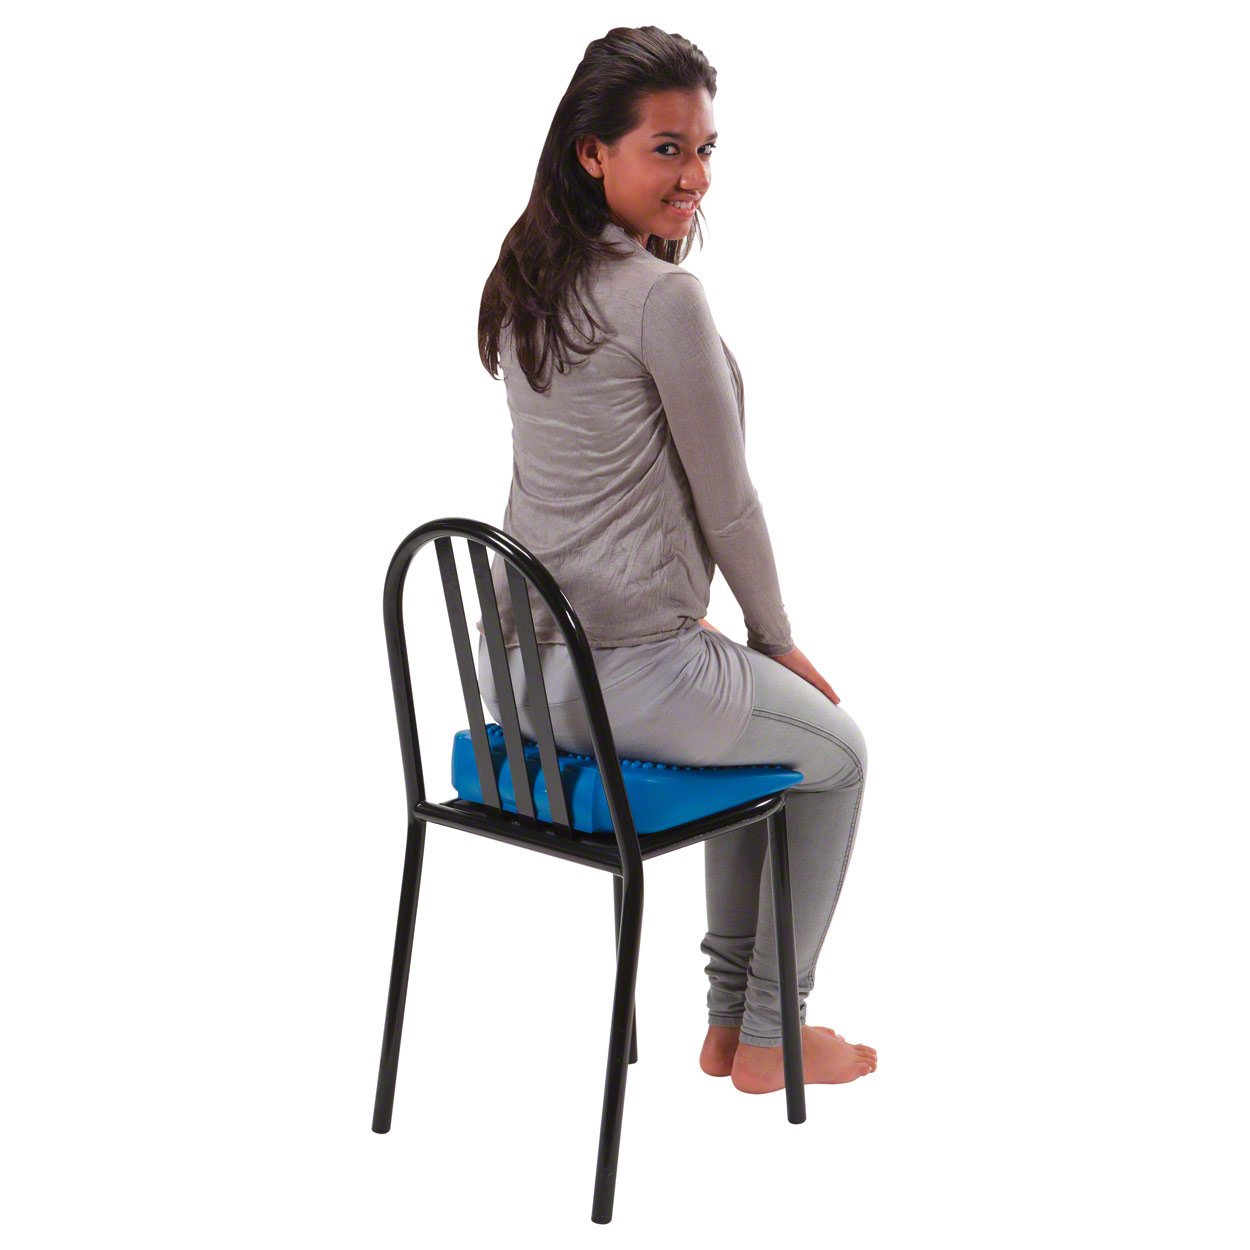 Sitzkissen, Sitzkeile, Bälle: Mov'in Sit Sitzkeil - mit Luft gefüllter Keil